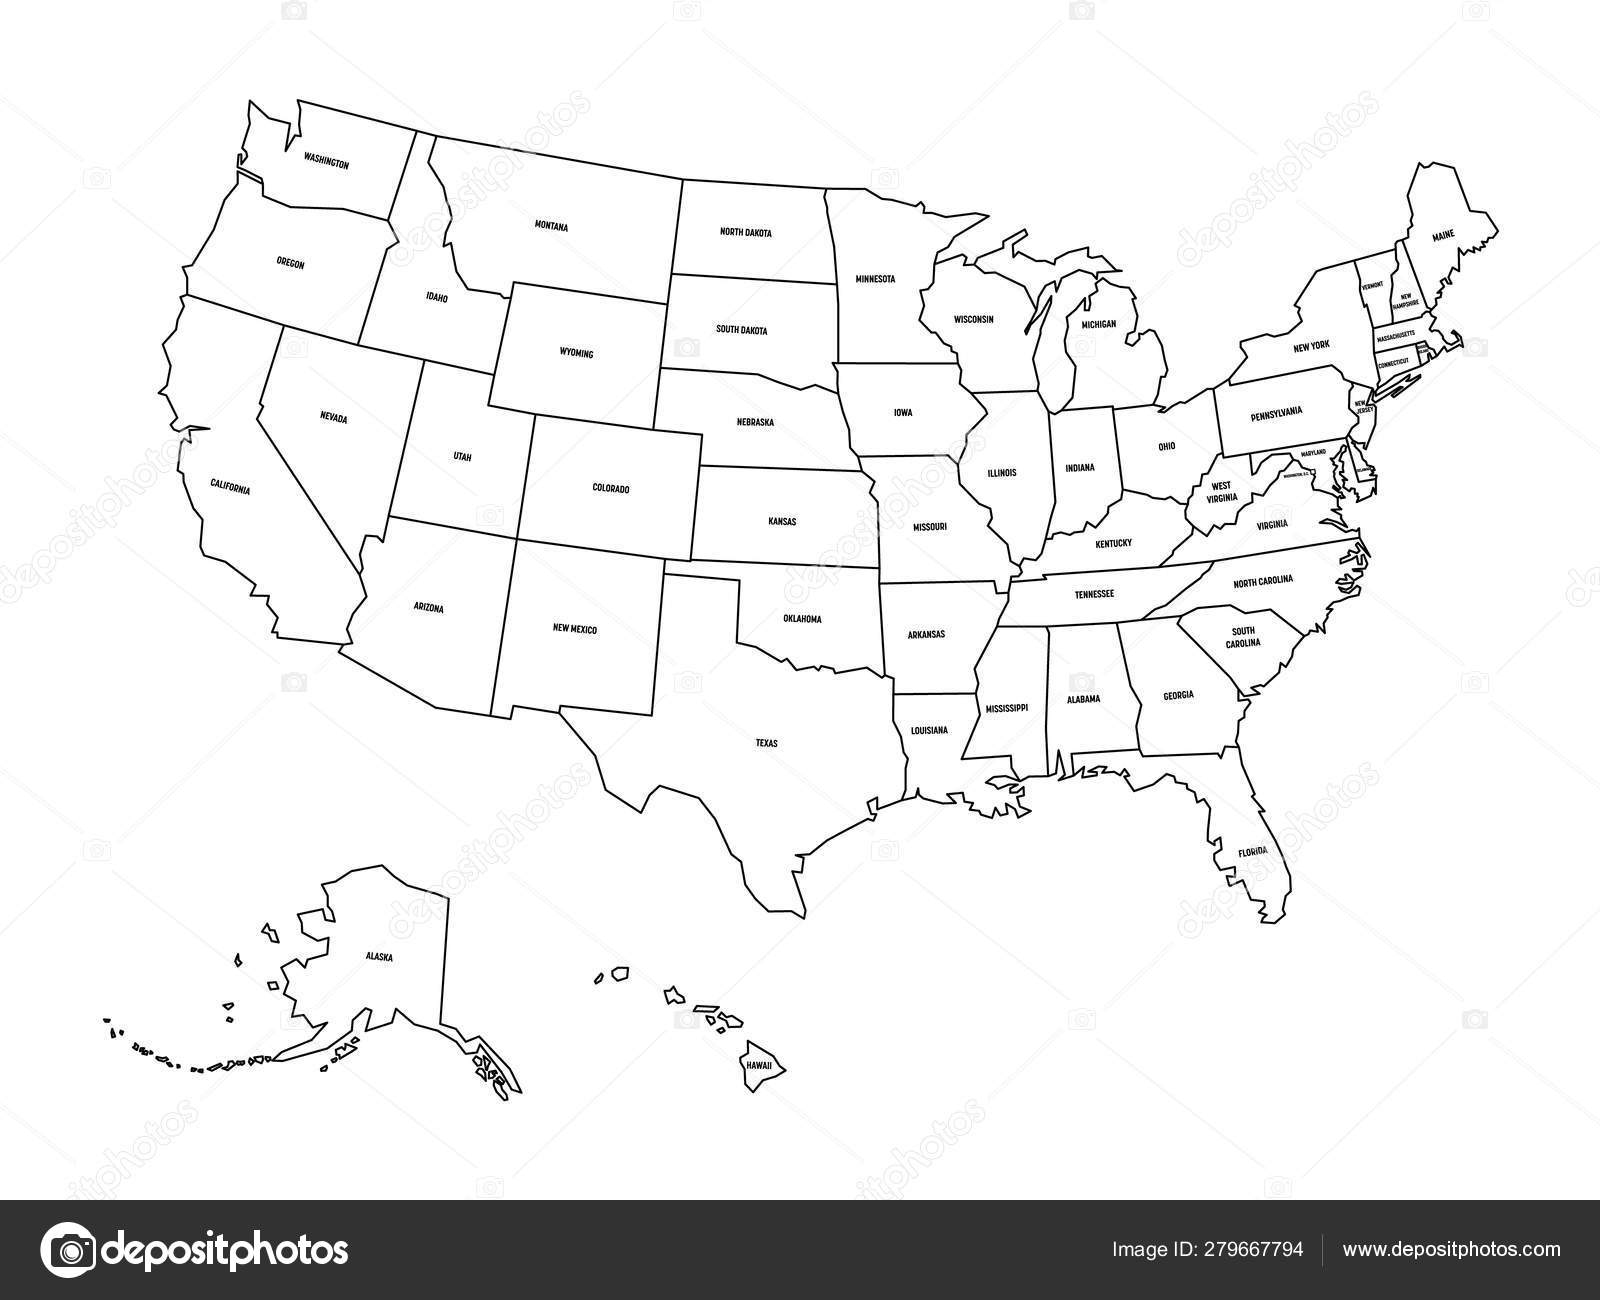 Hãy khám phá bản đồ chính trị của Mỹ đơn giản màu đen trên nền trắng! Với sự tập trung vào các khu vực chính trị của Mỹ, bản đồ này sẽ giúp bạn hiểu rõ hơn về cấu trúc chính trị của đất nước này. Hãy để bản đồ này giúp bạn phát triển khả năng suy nghĩ logic của mình.